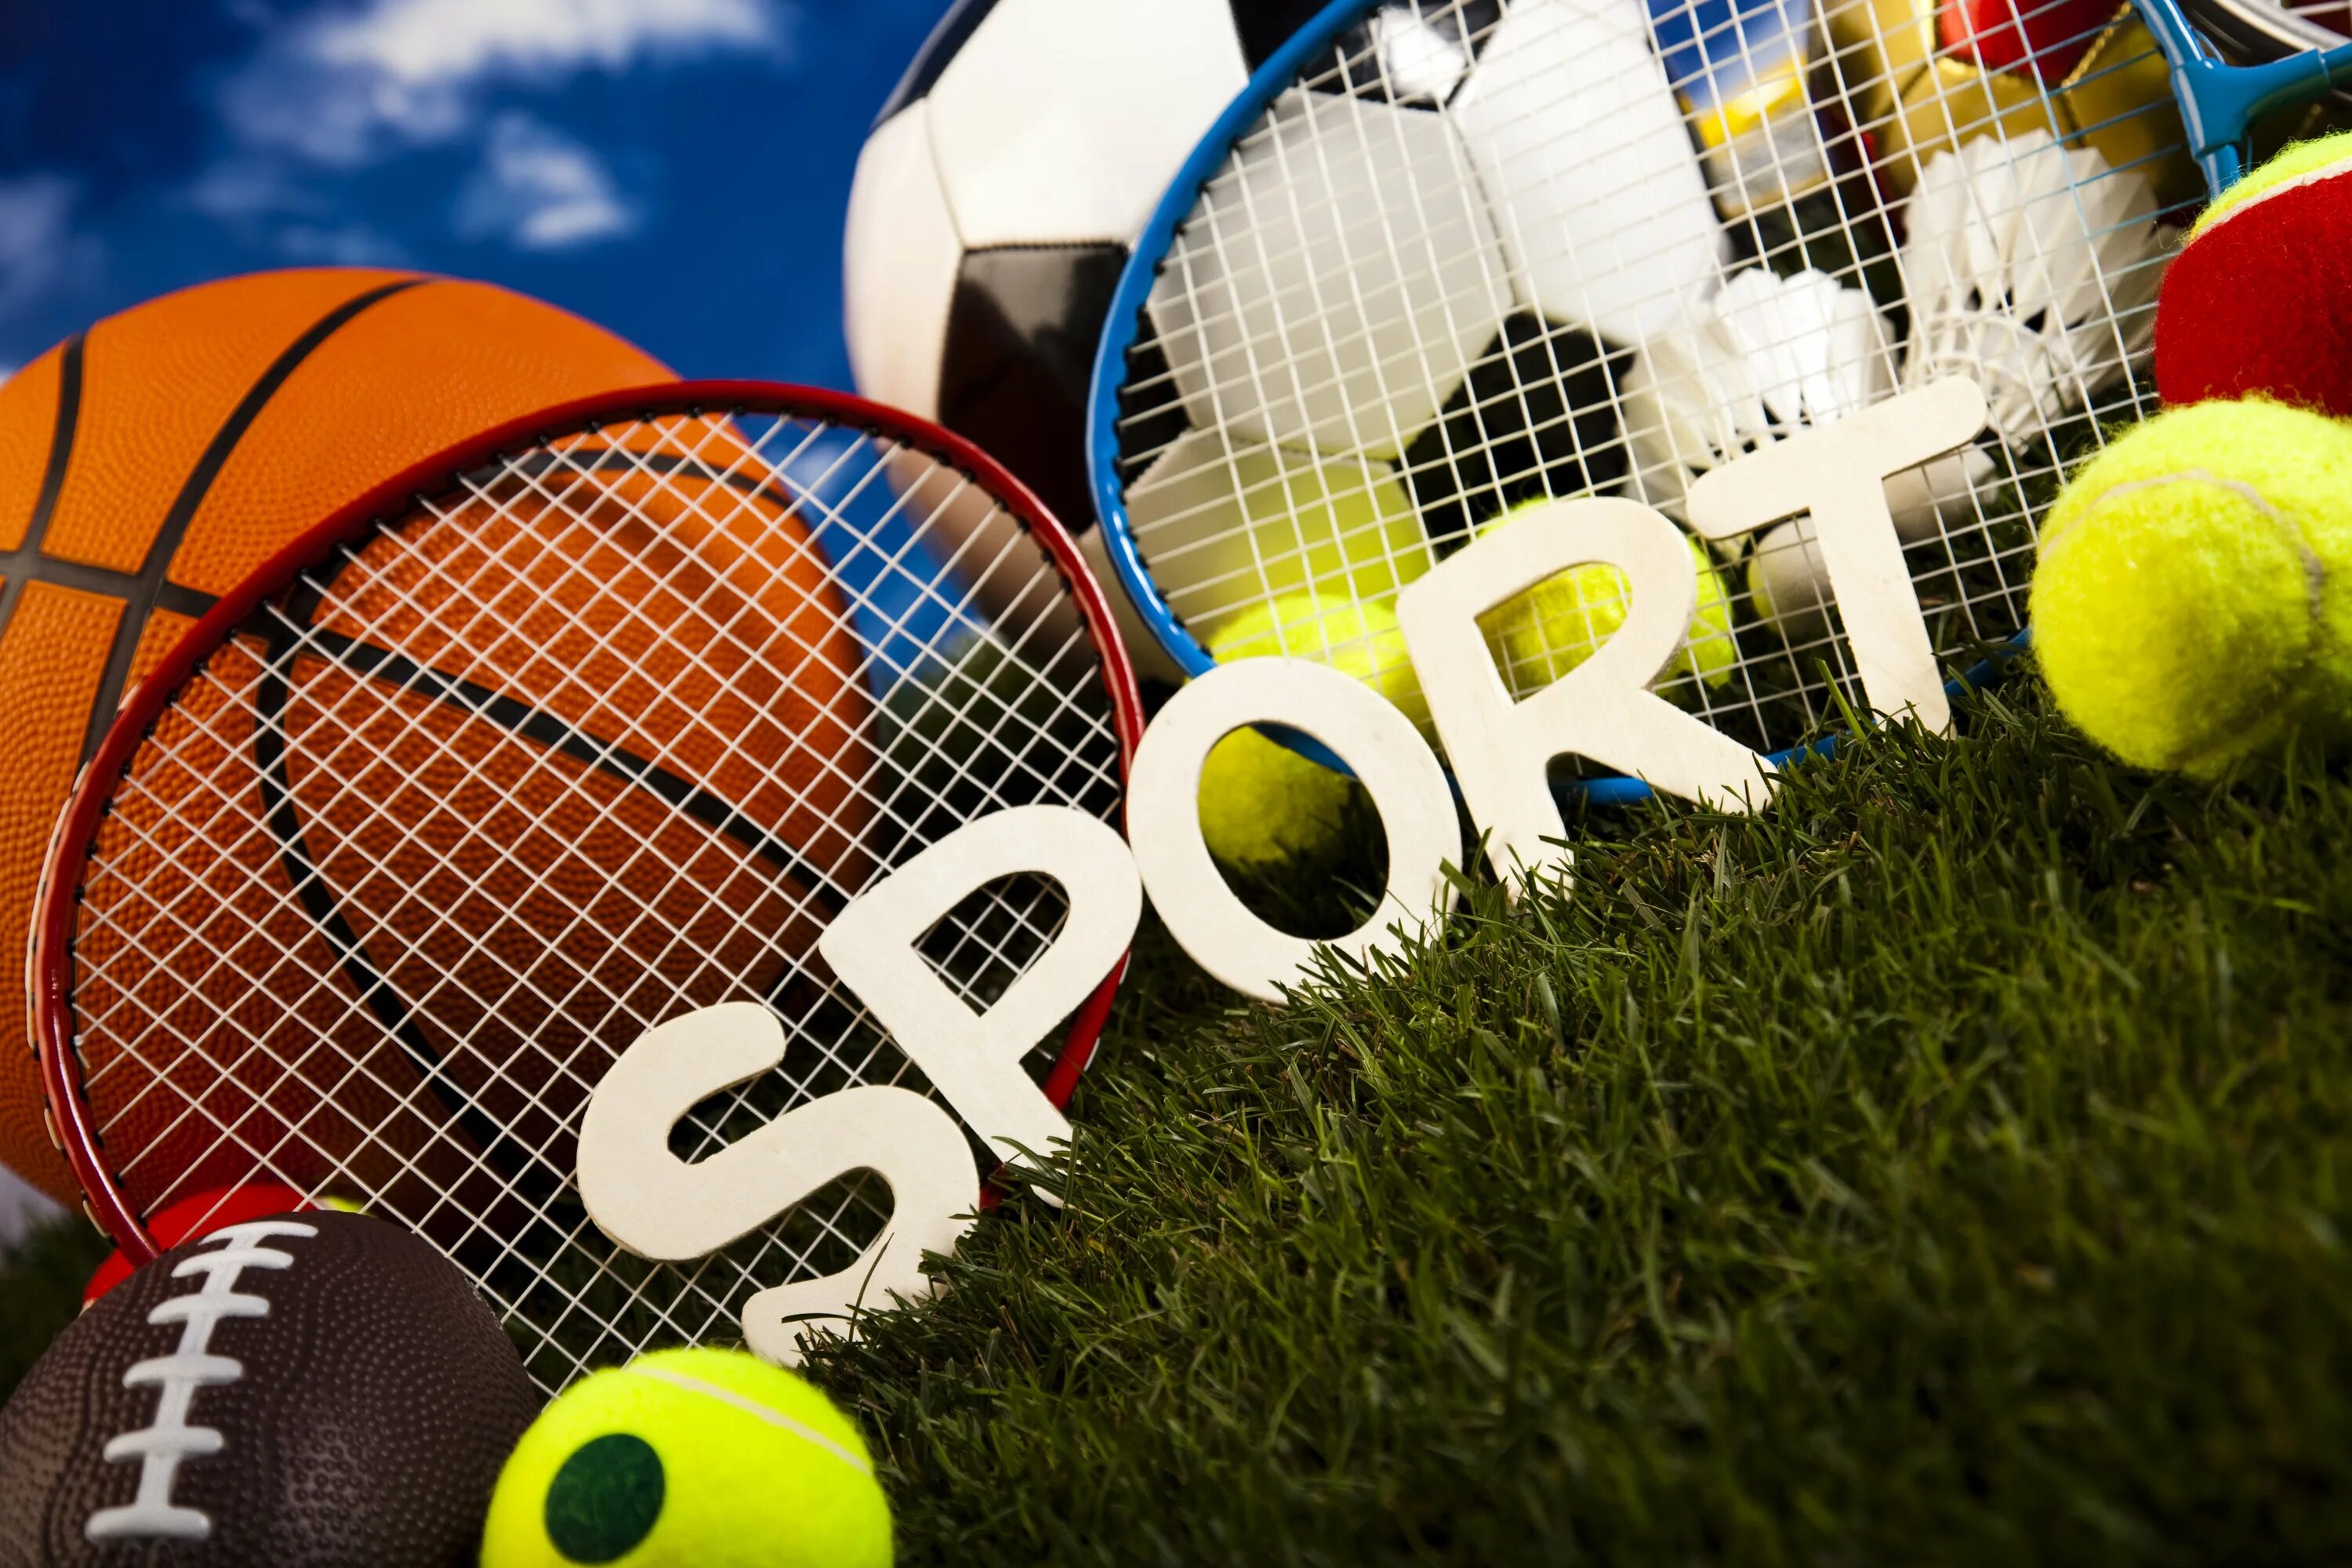 Спорт вокруг. Sport Top игрушка. Картинка для блога про спорт. Спортивный блог.